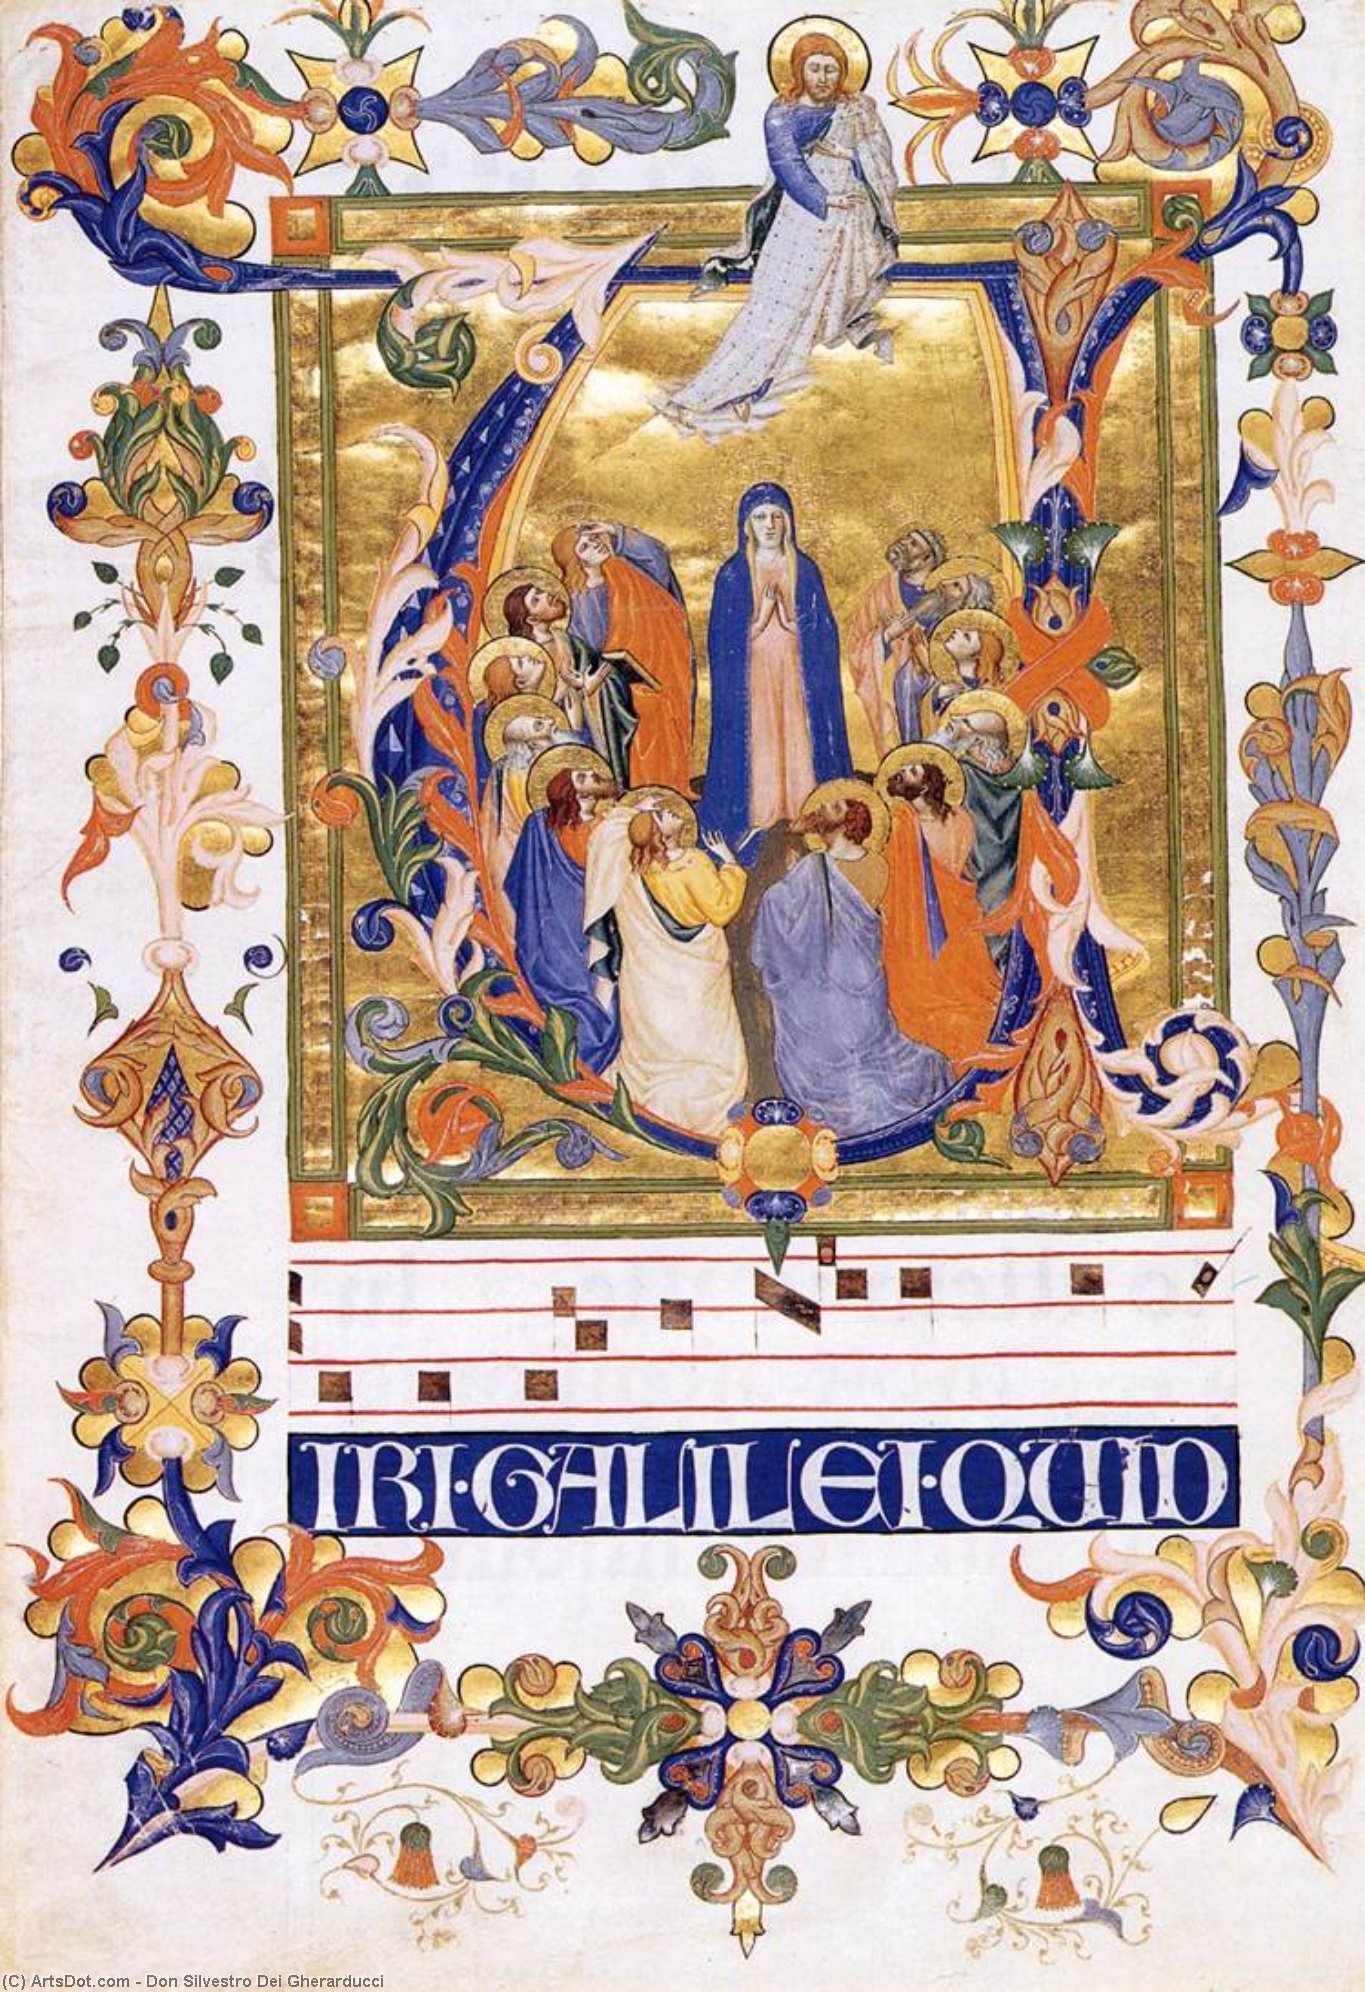 WikiOO.org - Encyclopedia of Fine Arts - Lukisan, Artwork Don Silvestro Dei Gherarducci - Gradual 2 for San Michele a Murano (Folio 44)